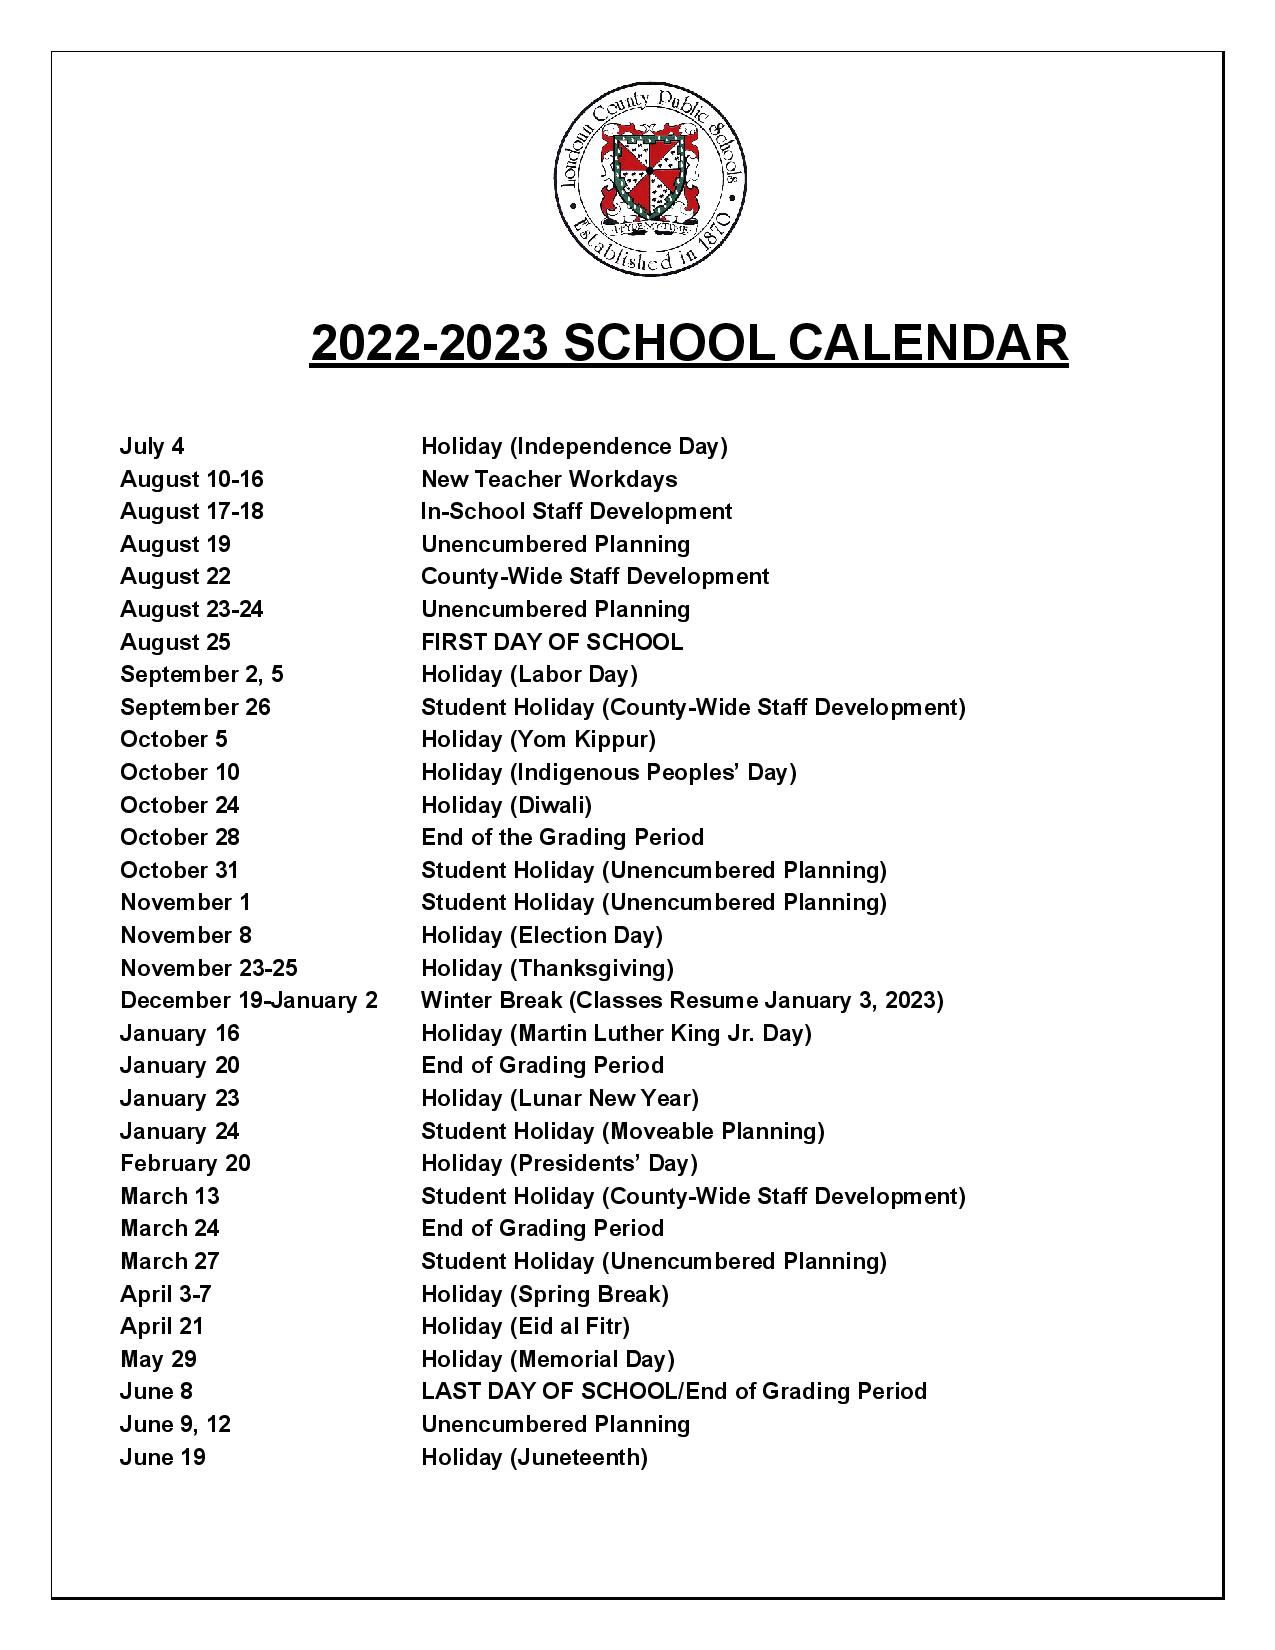 loudoun-county-public-schools-calendar-2022-2023-from-loudoun-county